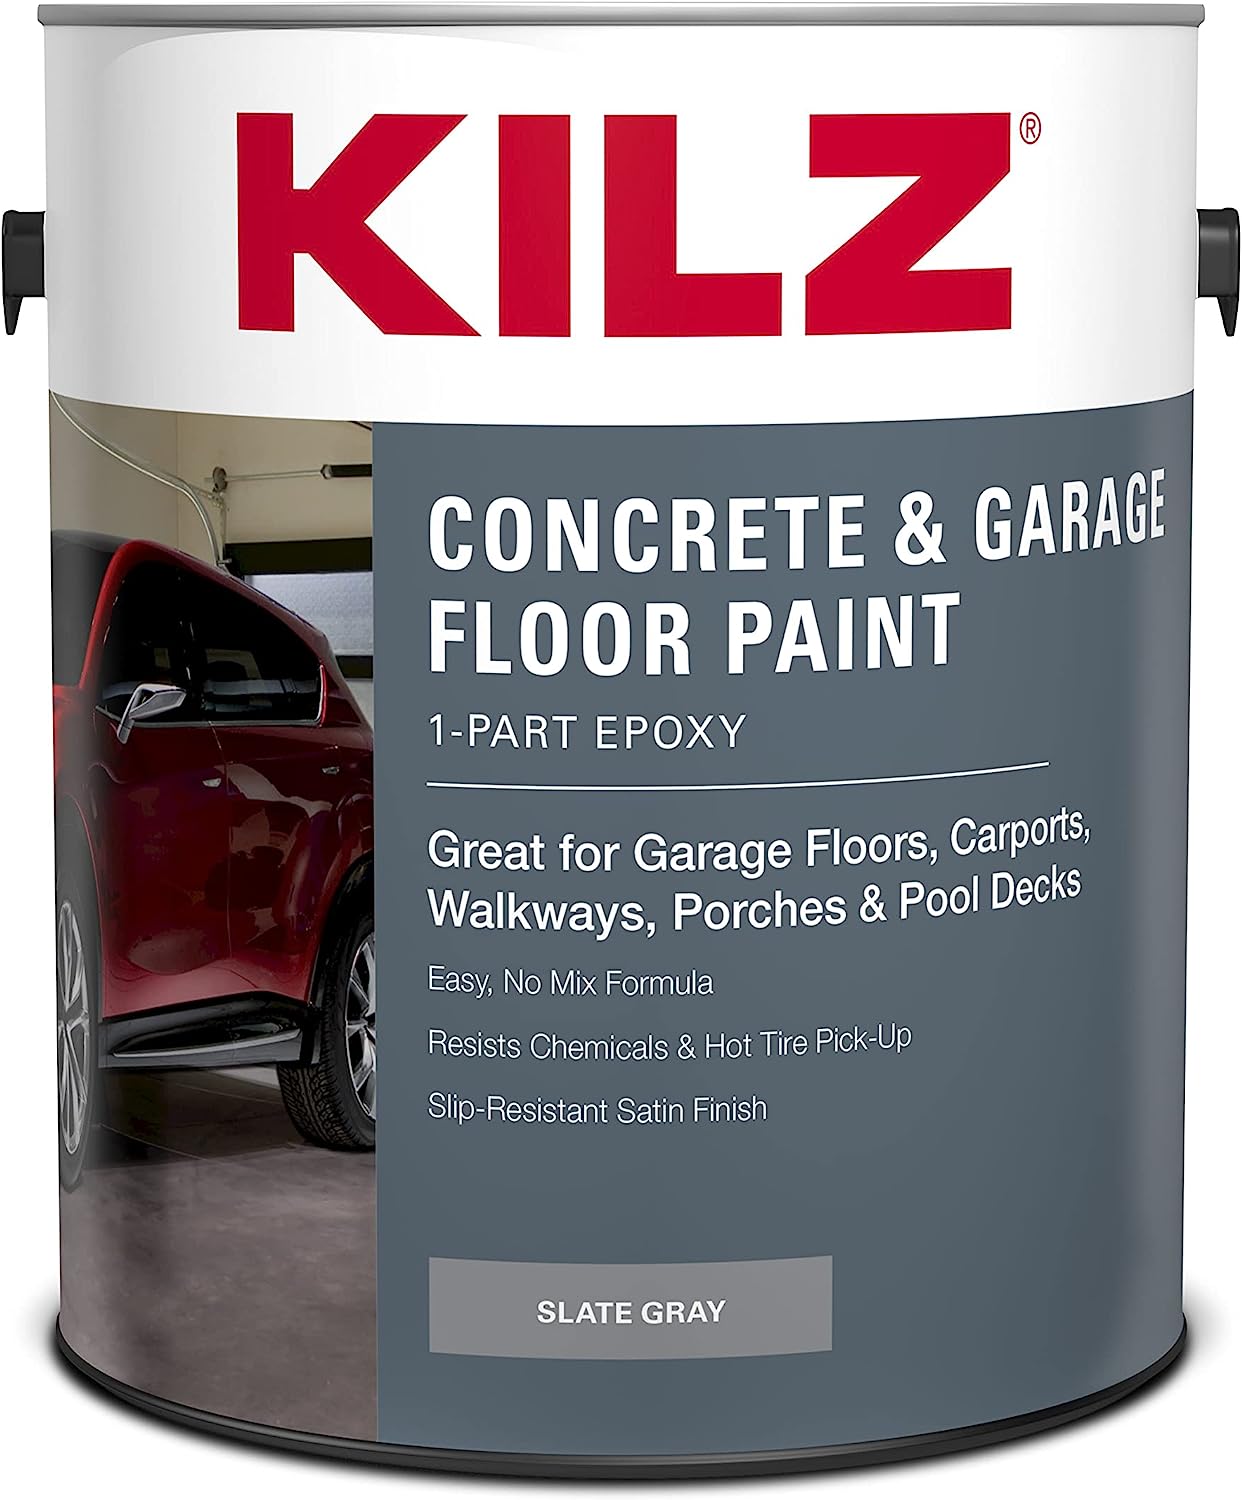 gray paint for basement product comparison